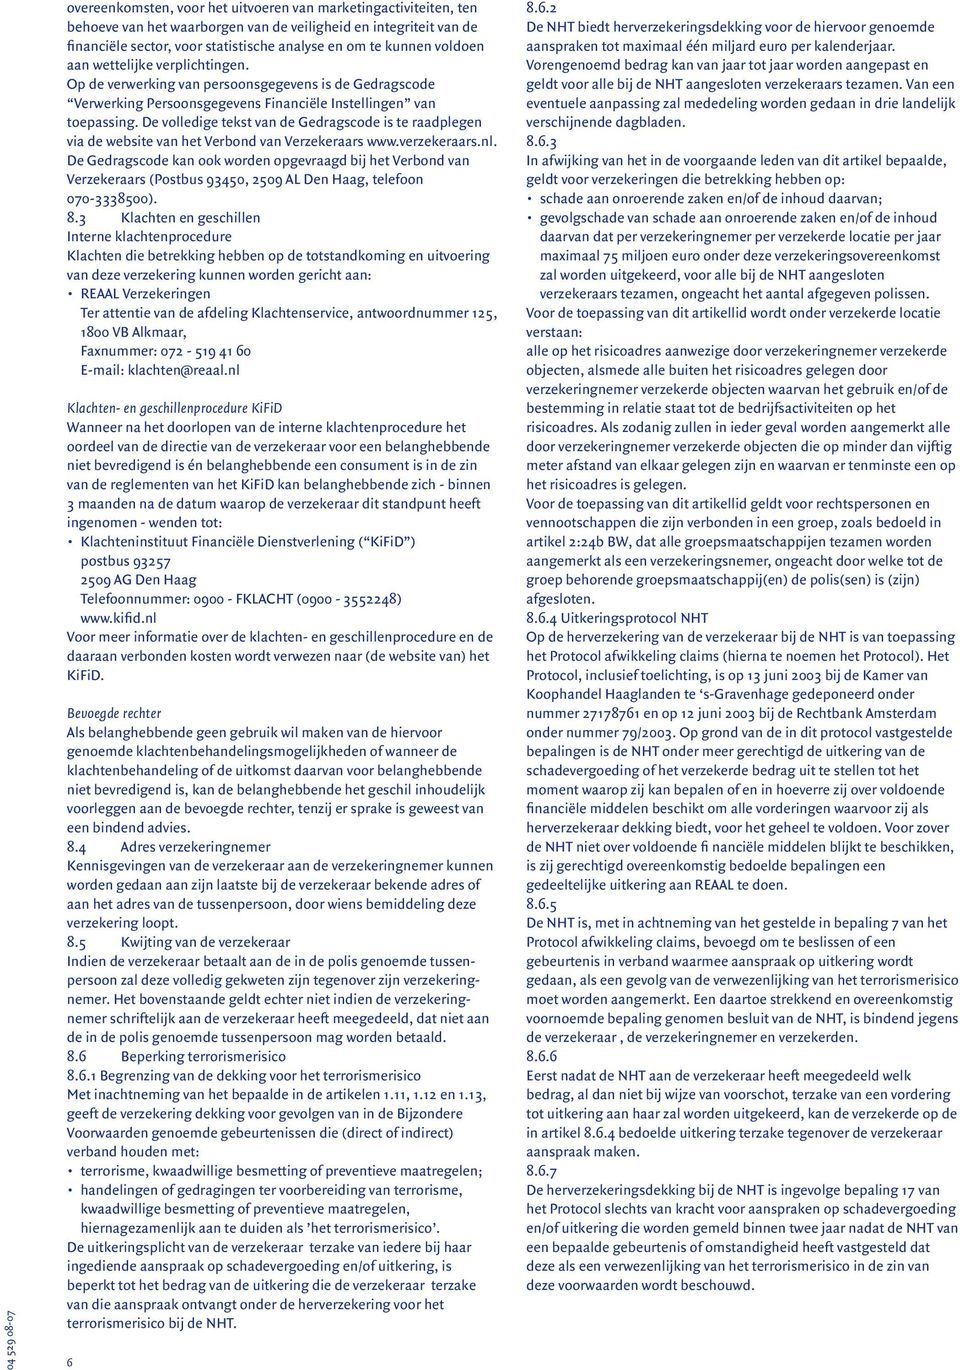 De volledige tekst van de Gedragscode is te raadplegen via de website van het Verbond van Verzekeraars www.verzekeraars.nl.